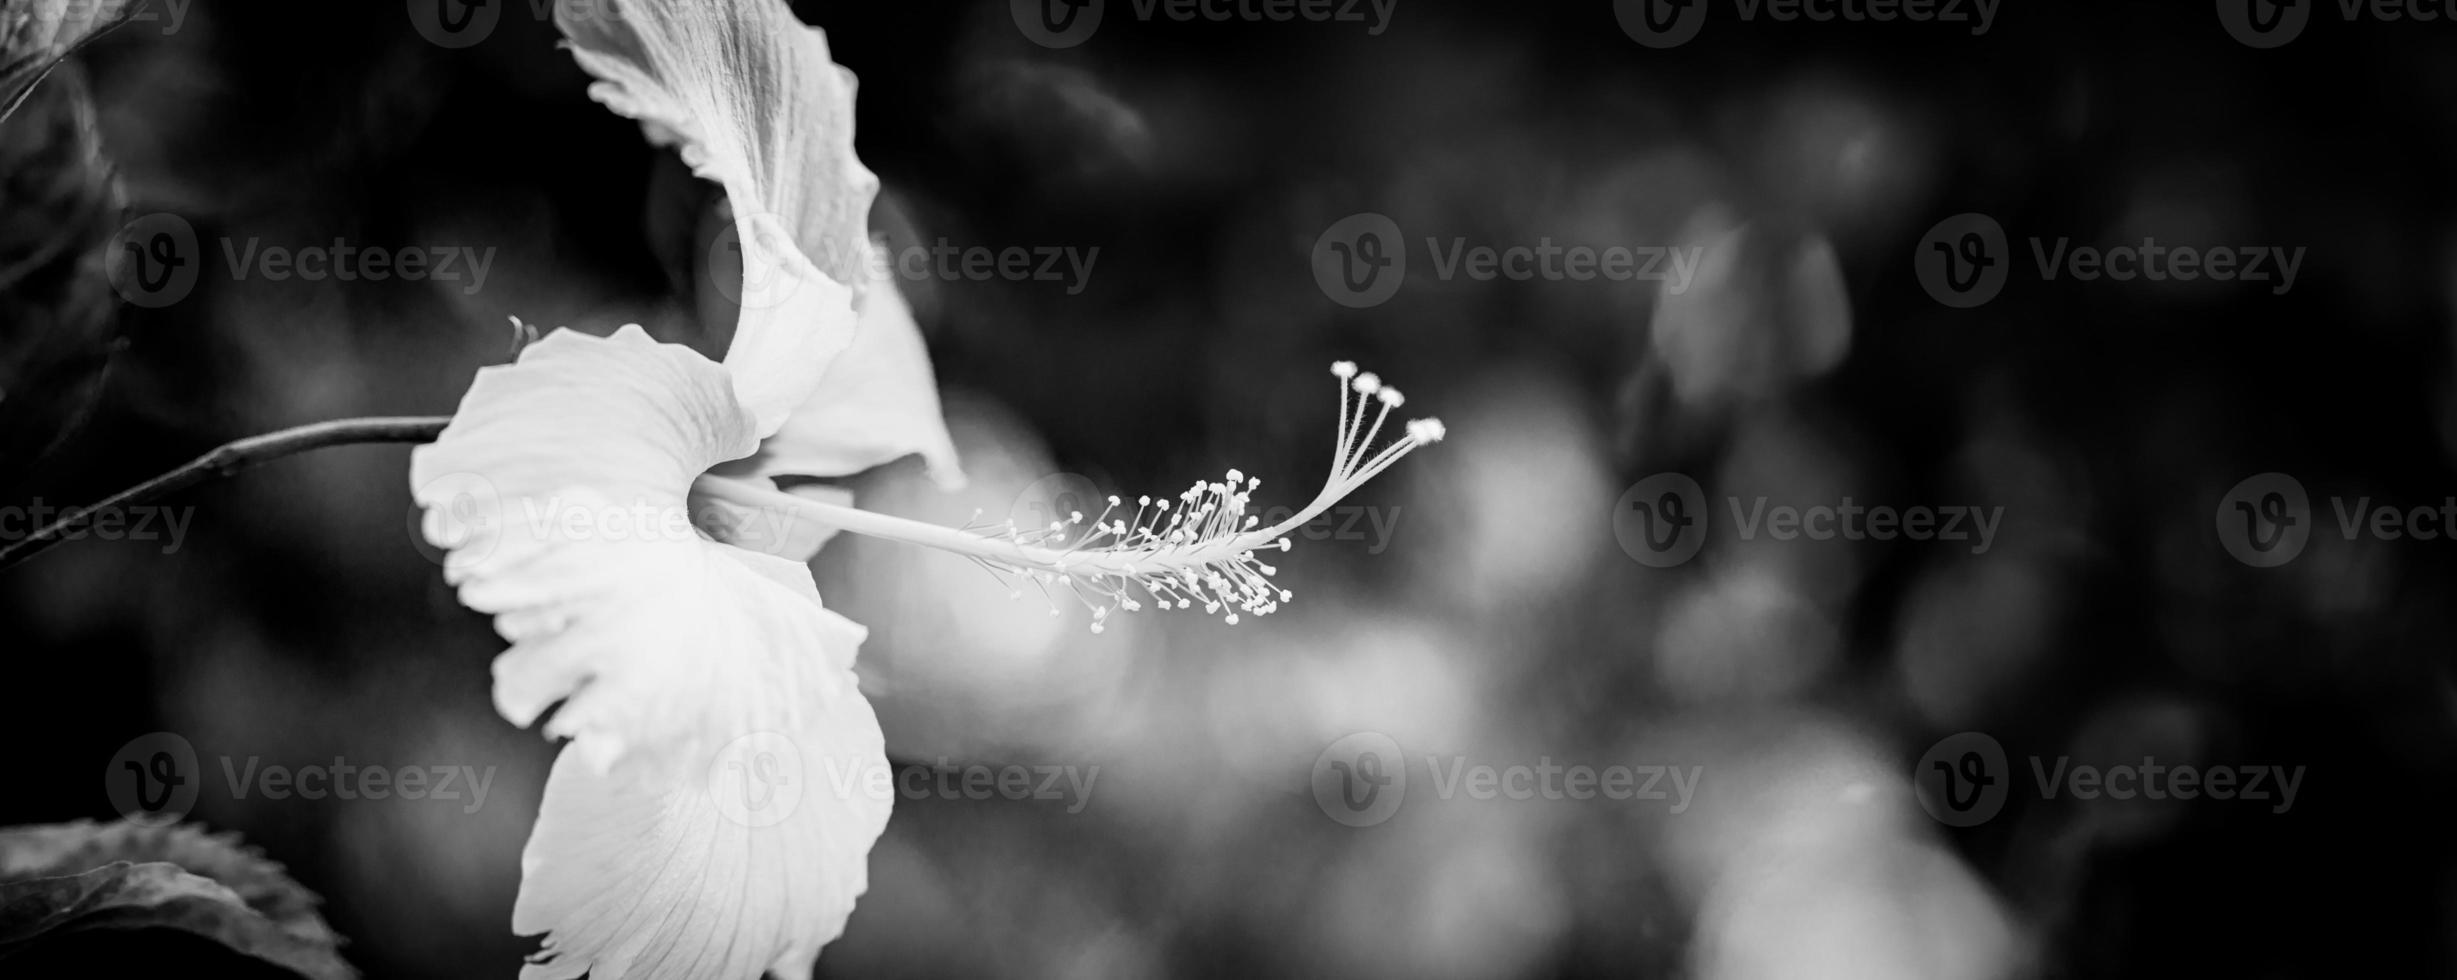 weißer hibiskuskopf mit dunklem dramatischem laub auf minimalistischem schwarzem hintergrund. abstrakte schwarze und weiße tropische Natur in der Nähe. künstlerisches Blumenmakro, minimale Komposition, natürliches Frühlingsmonochrom foto